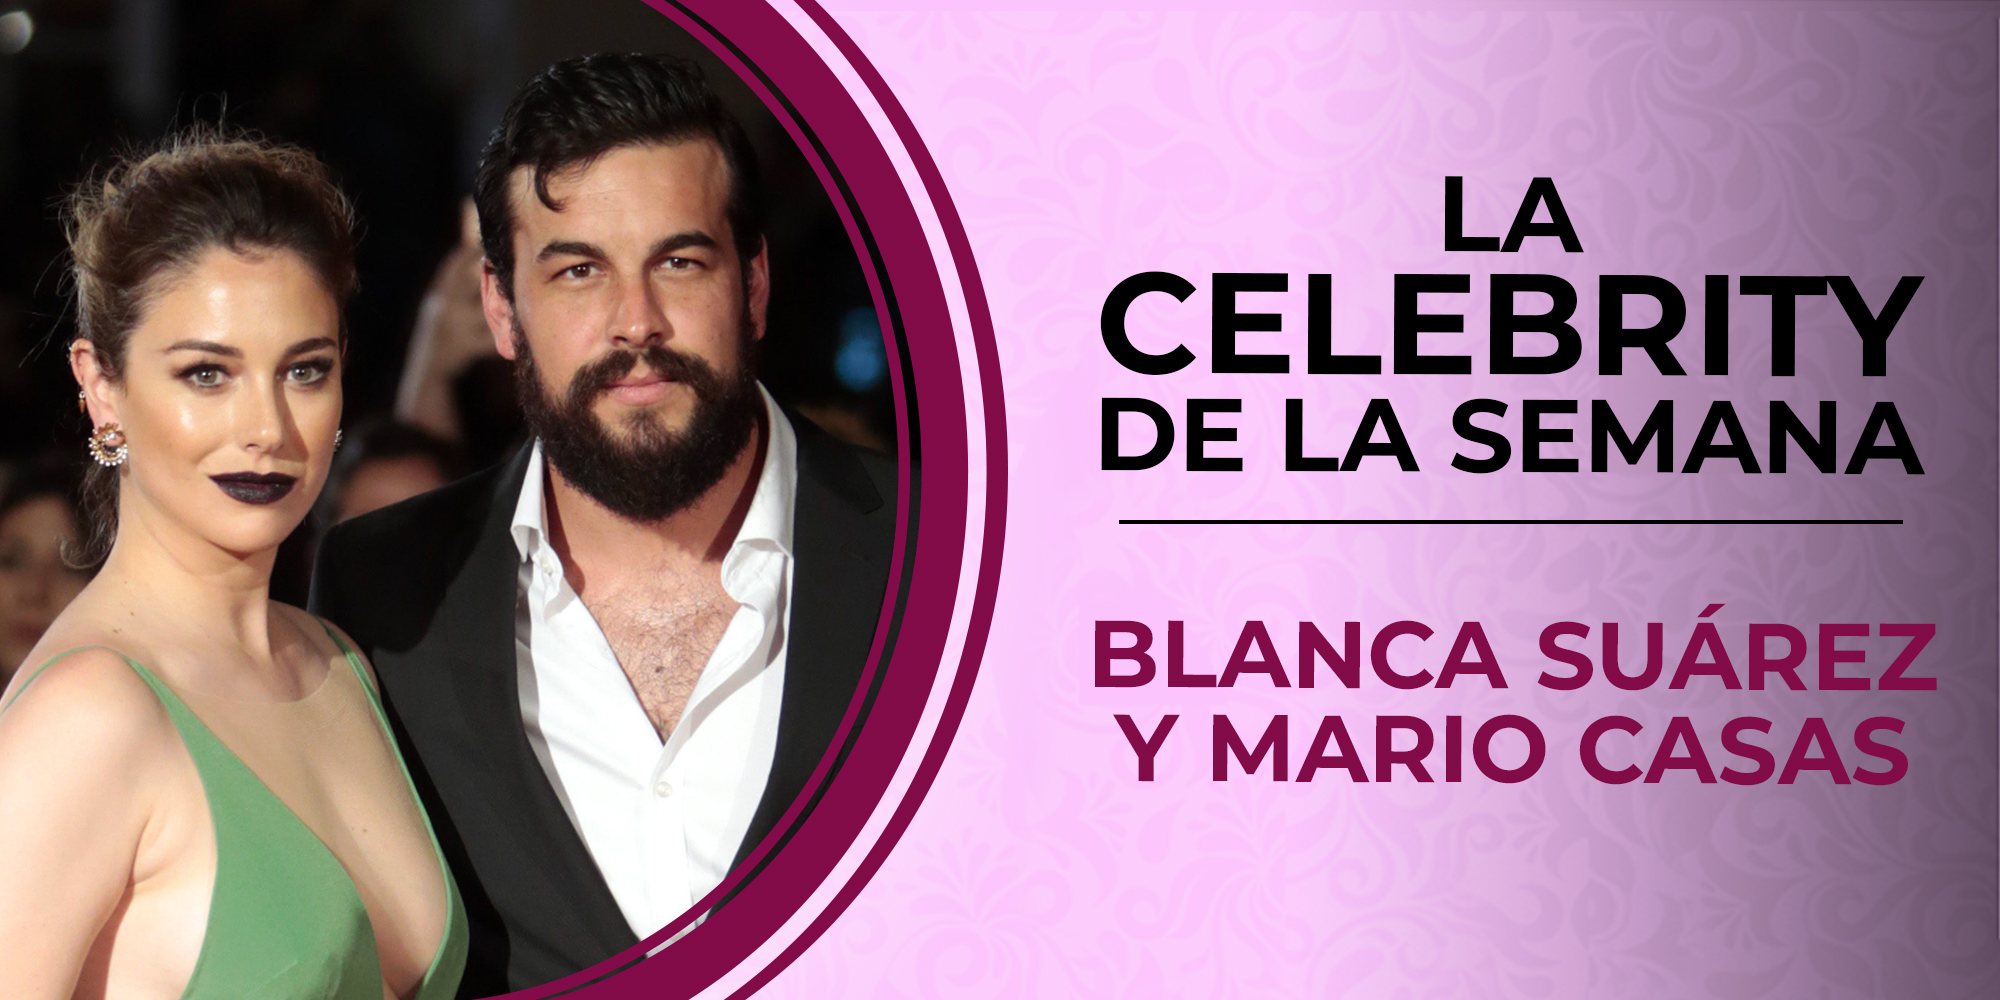 Blanca Suárez y Mario Casas, celebrities de la semana por su apasionado beso